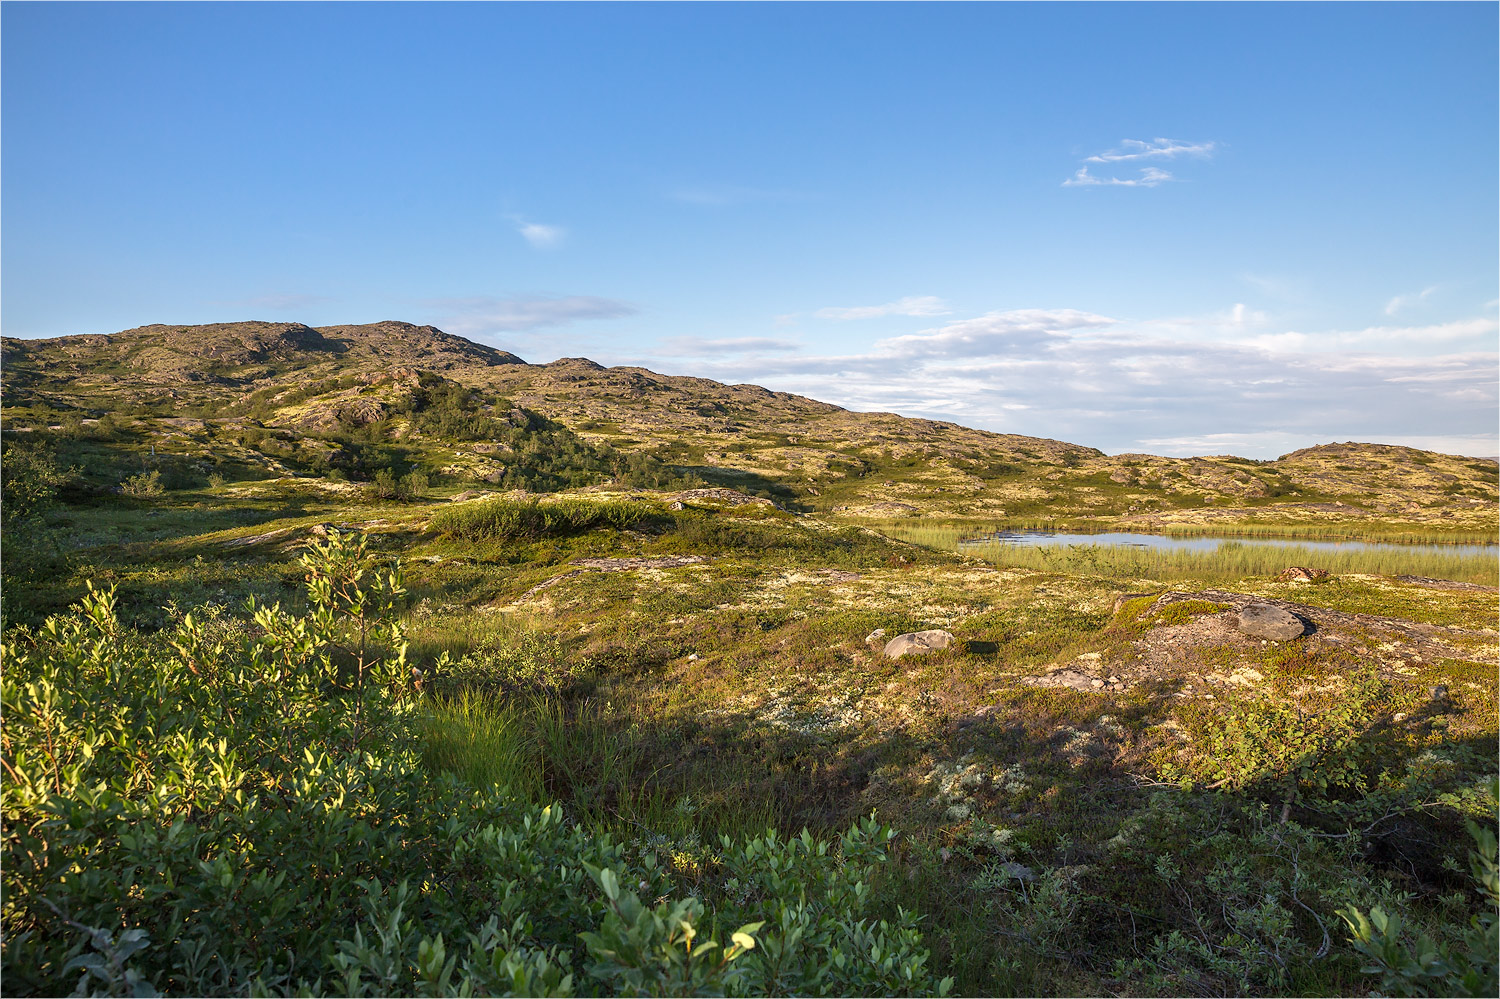 Муста-Тунтури, image of landscape/habitat.